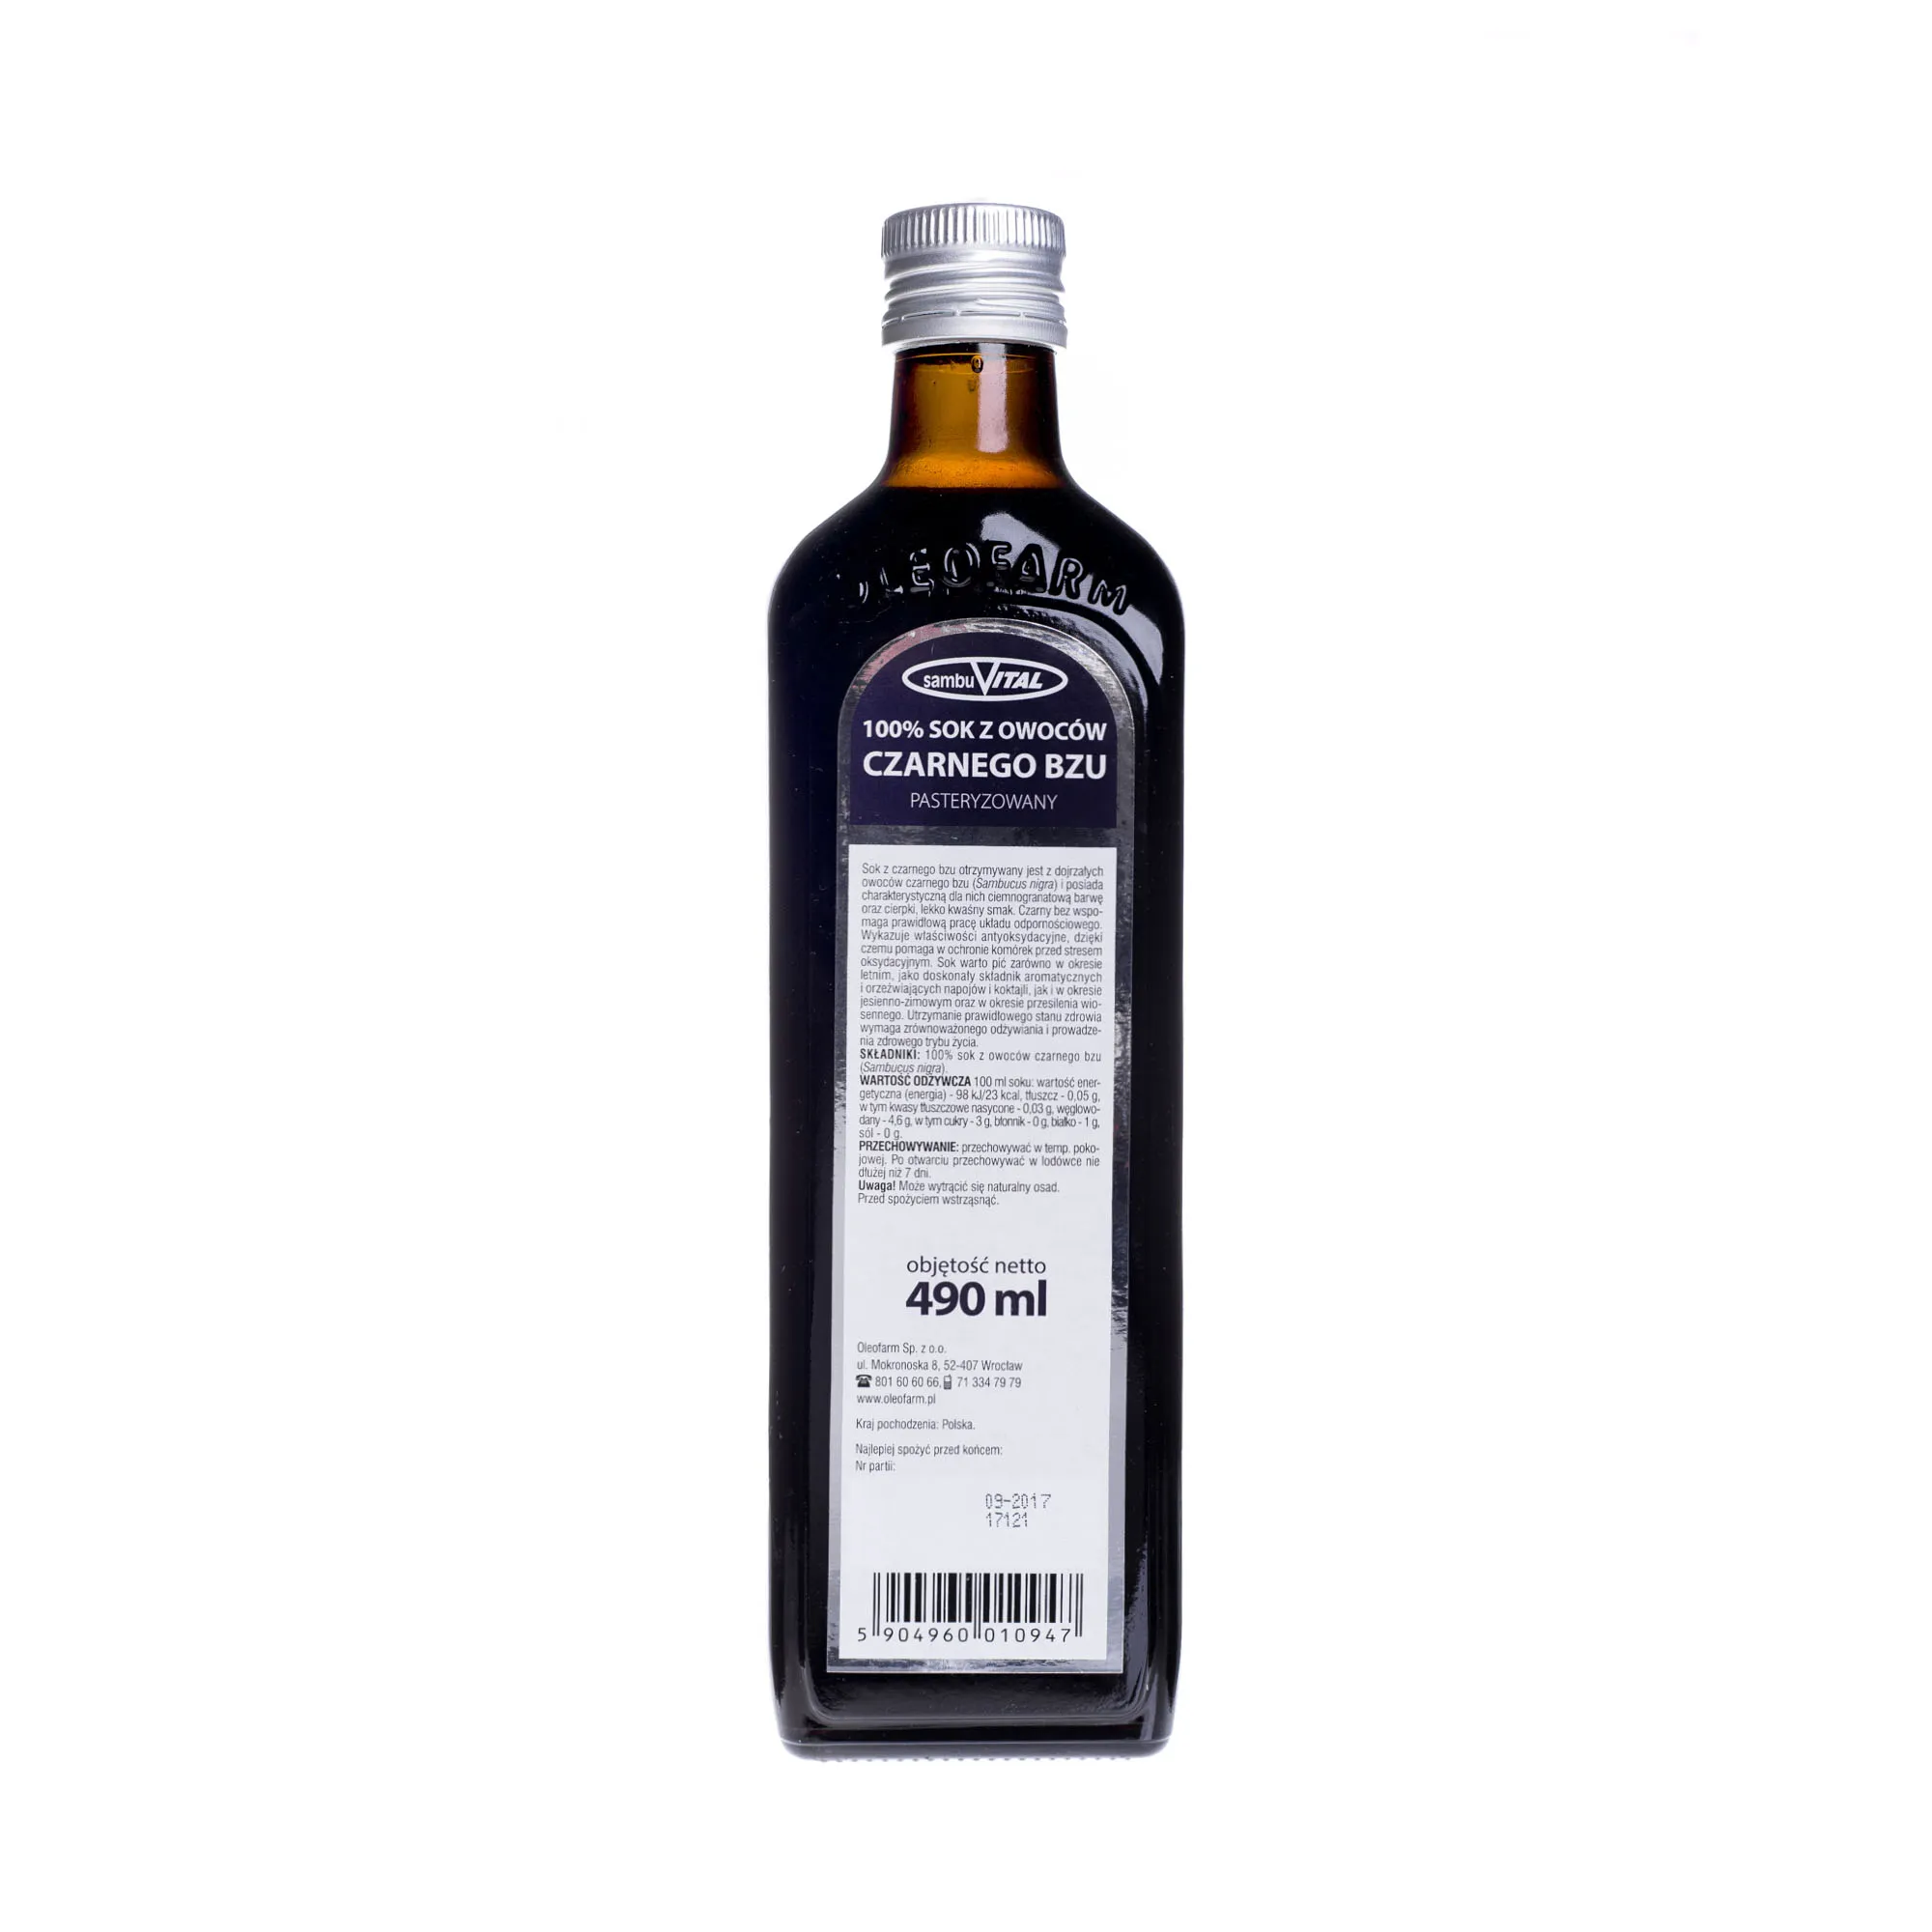 Oleofarm Sambuvital Sok z Owoców Czarnego Bzu 100%, 490 ml 